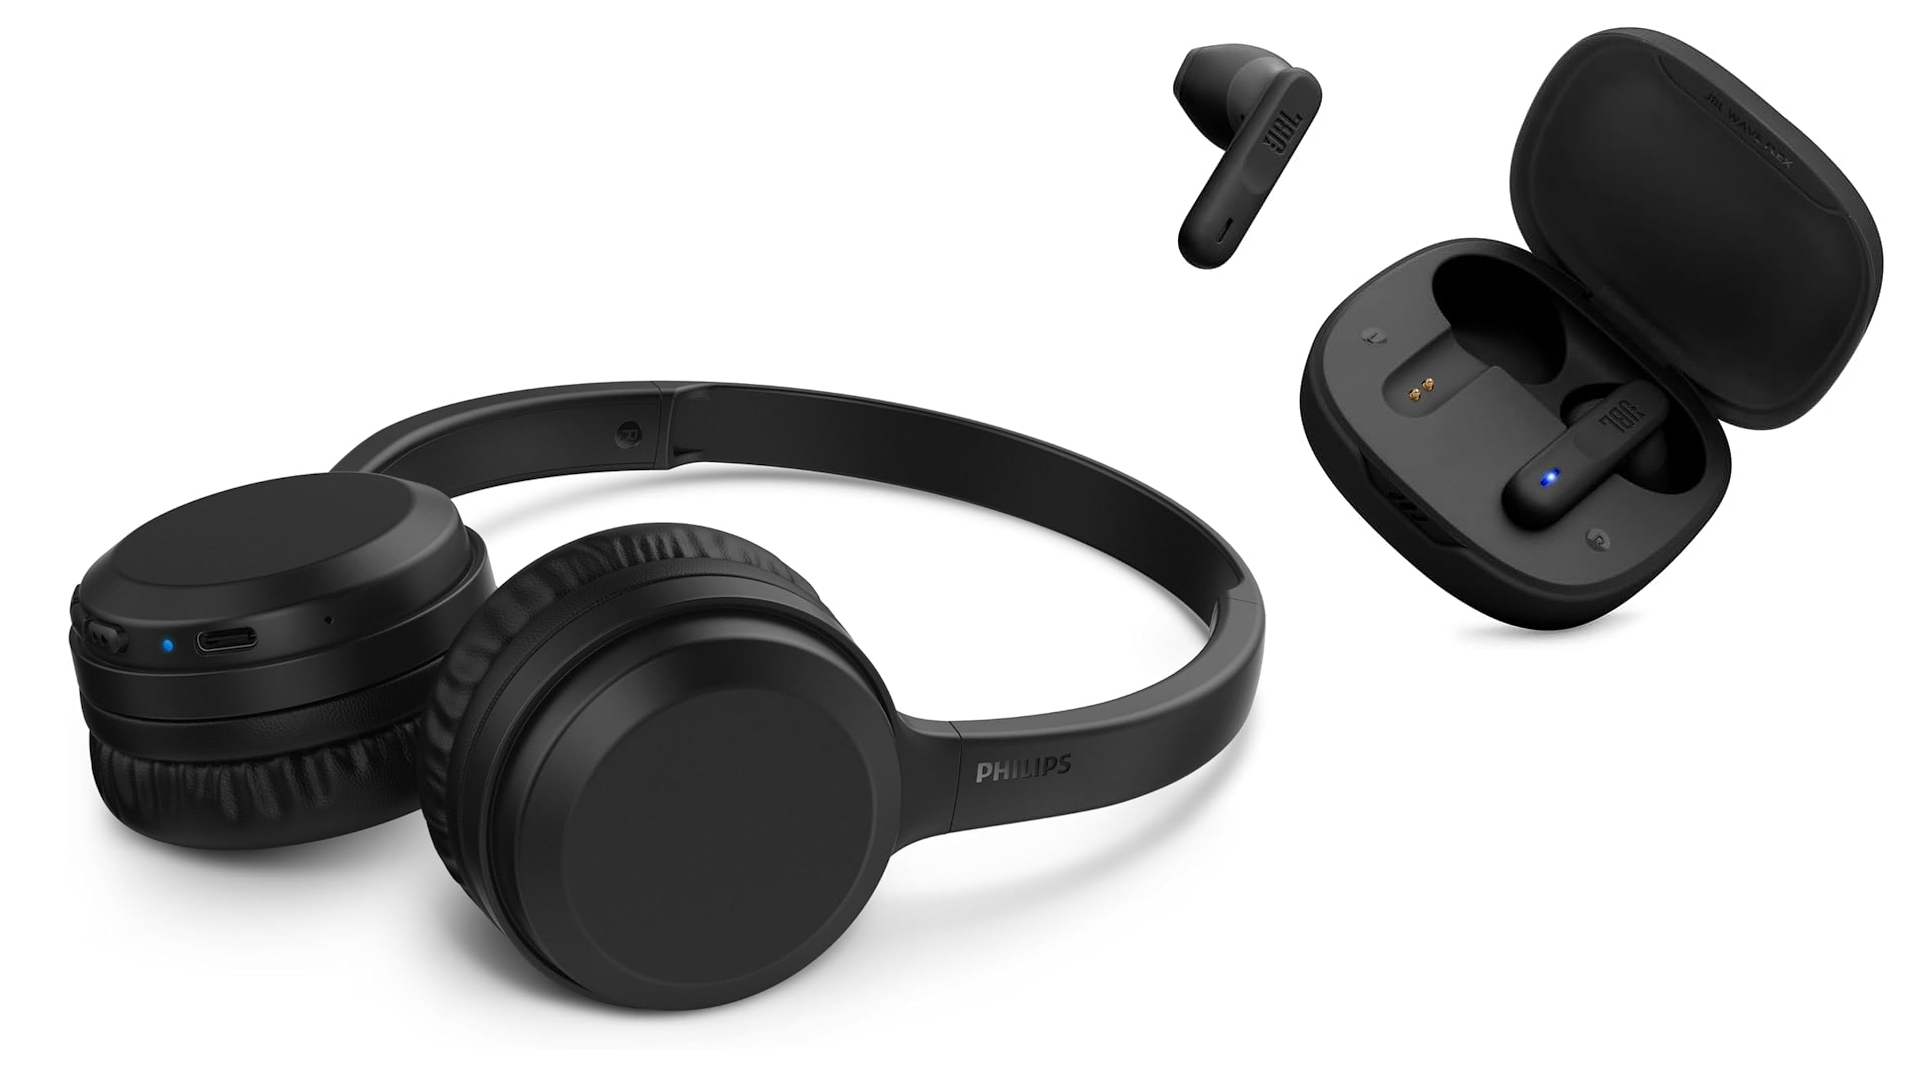 Ofertas do dia: até 47% off em fones de ouvido Bluetooth!